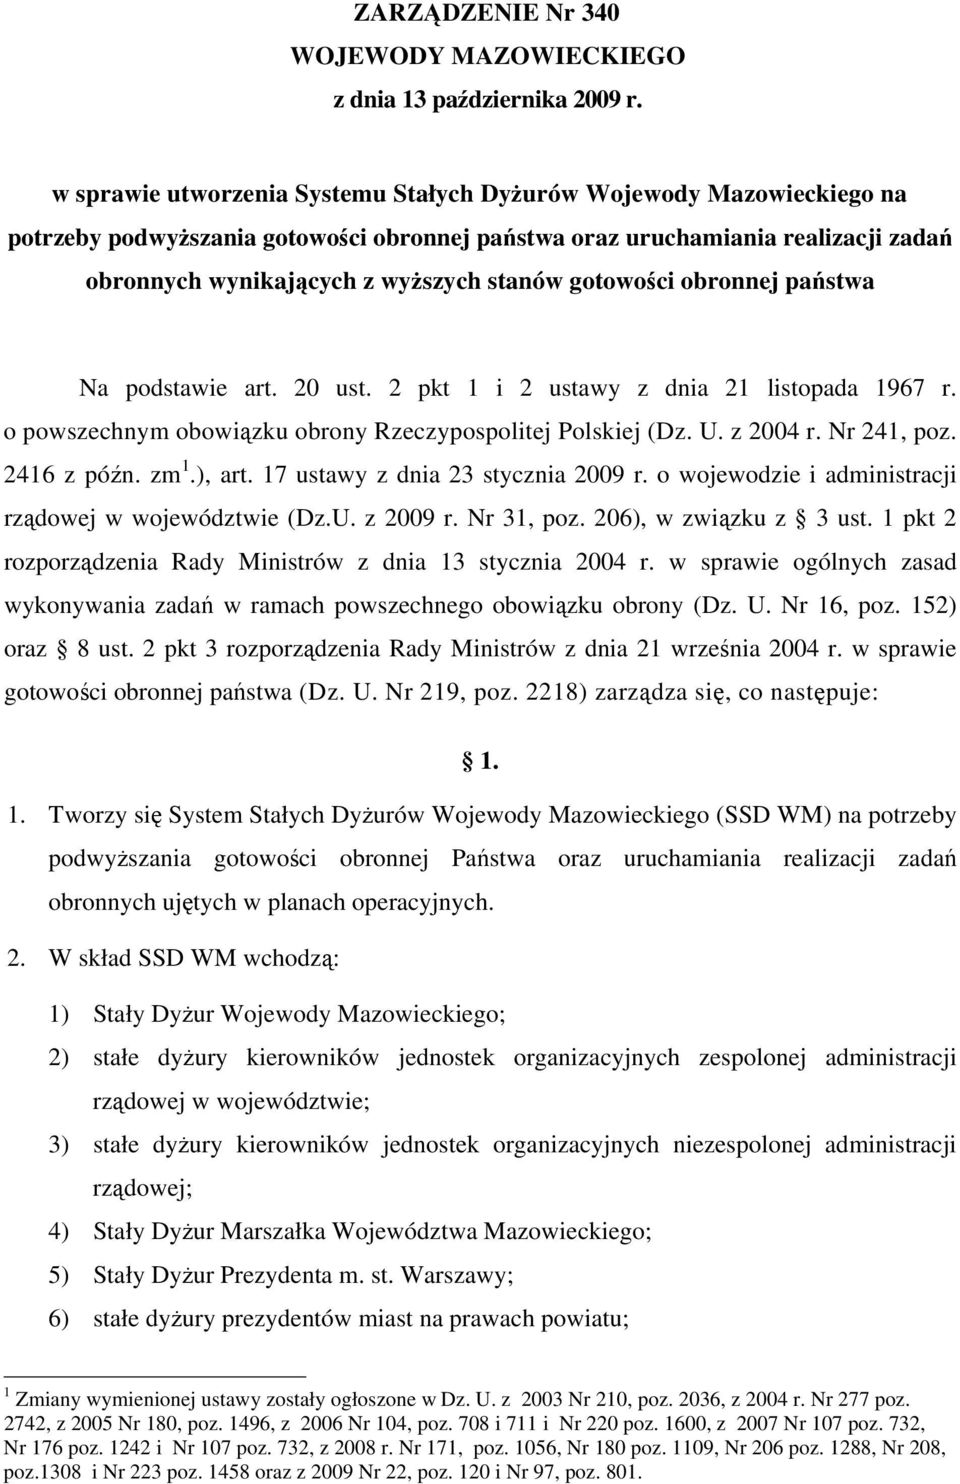 gotowości obronnej państwa Na podstawie art. 20 ust. 2 pkt 1 i 2 ustawy z dnia 21 listopada 1967 r. o powszechnym obowiązku obrony Rzeczypospolitej Polskiej (Dz. U. z 2004 r. Nr 241, poz. 2416 z późn.